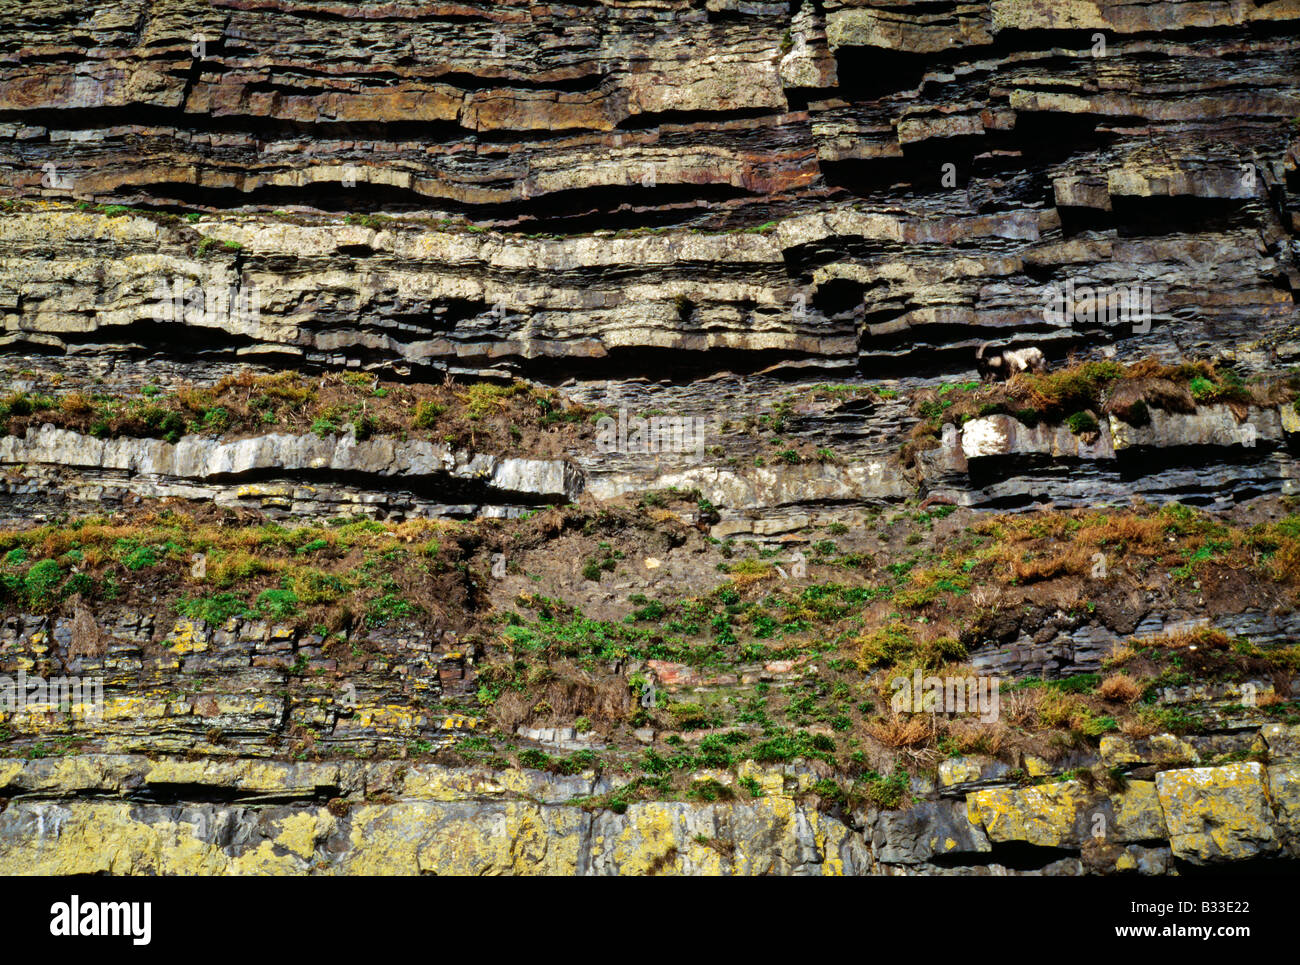 Die Ross-Formation ist eine Klippe der exponierten Lagen von Sediment. Stockfoto